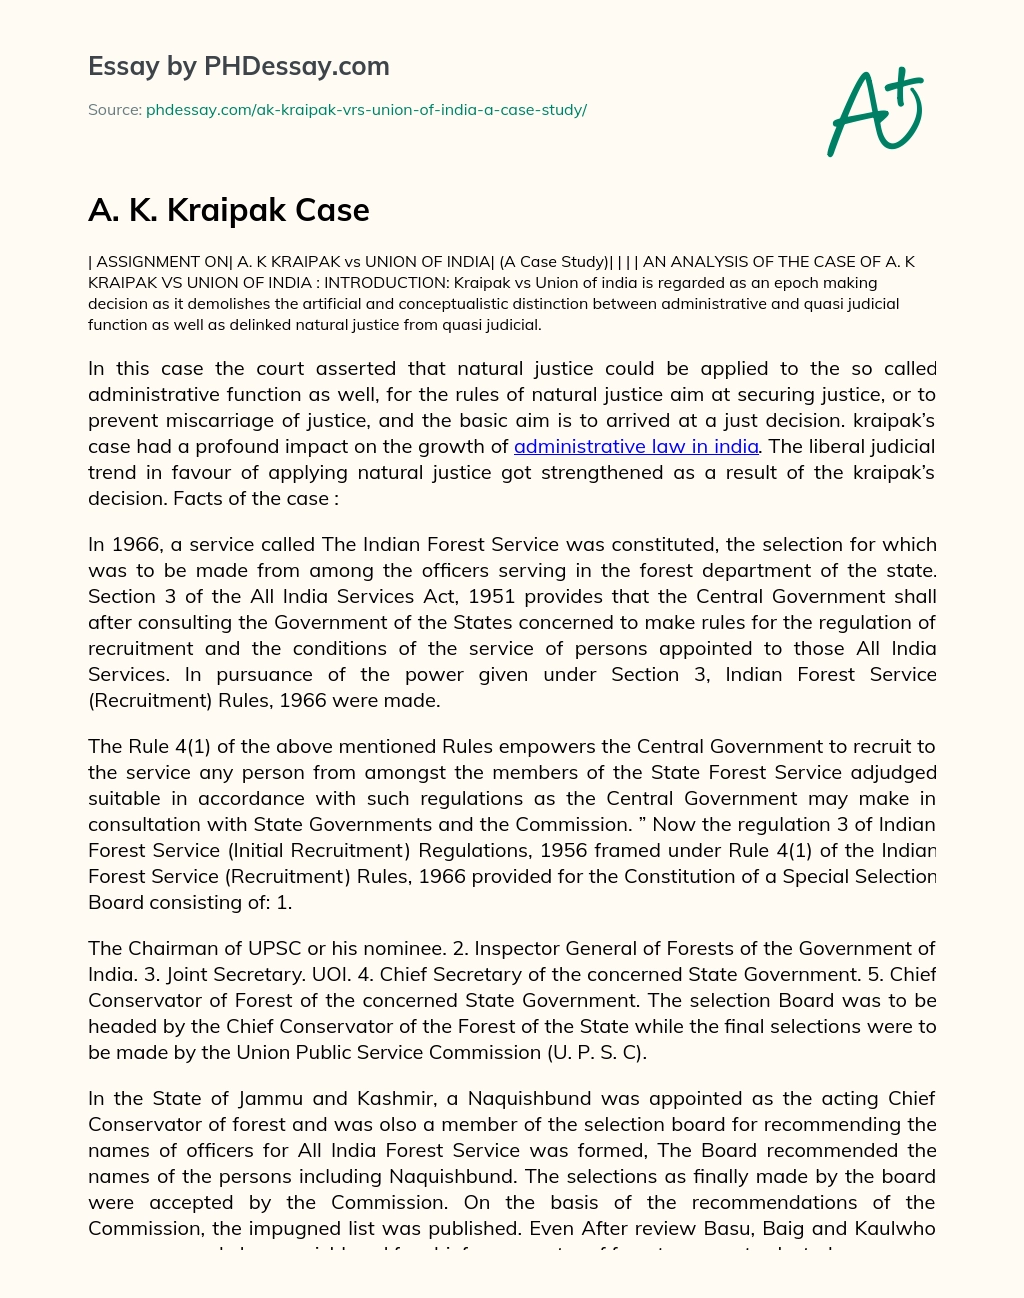 A. K. Kraipak Case essay